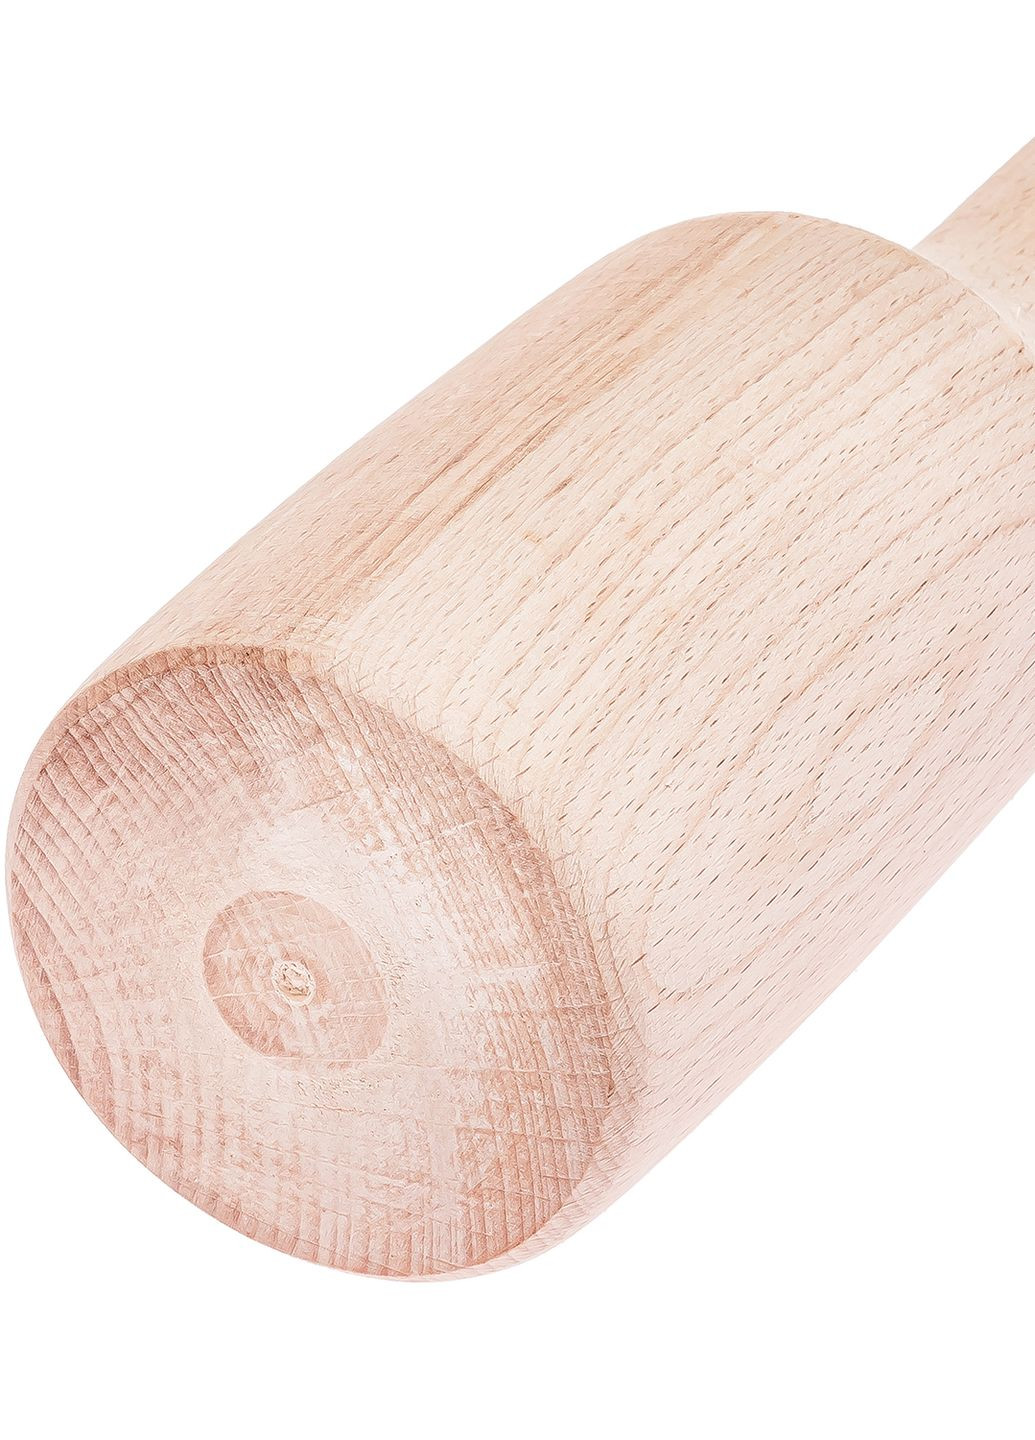 Товкачка картоплем'ялка фігурна велика для картоплі дерев'яна 30 см Woodly (274382573)